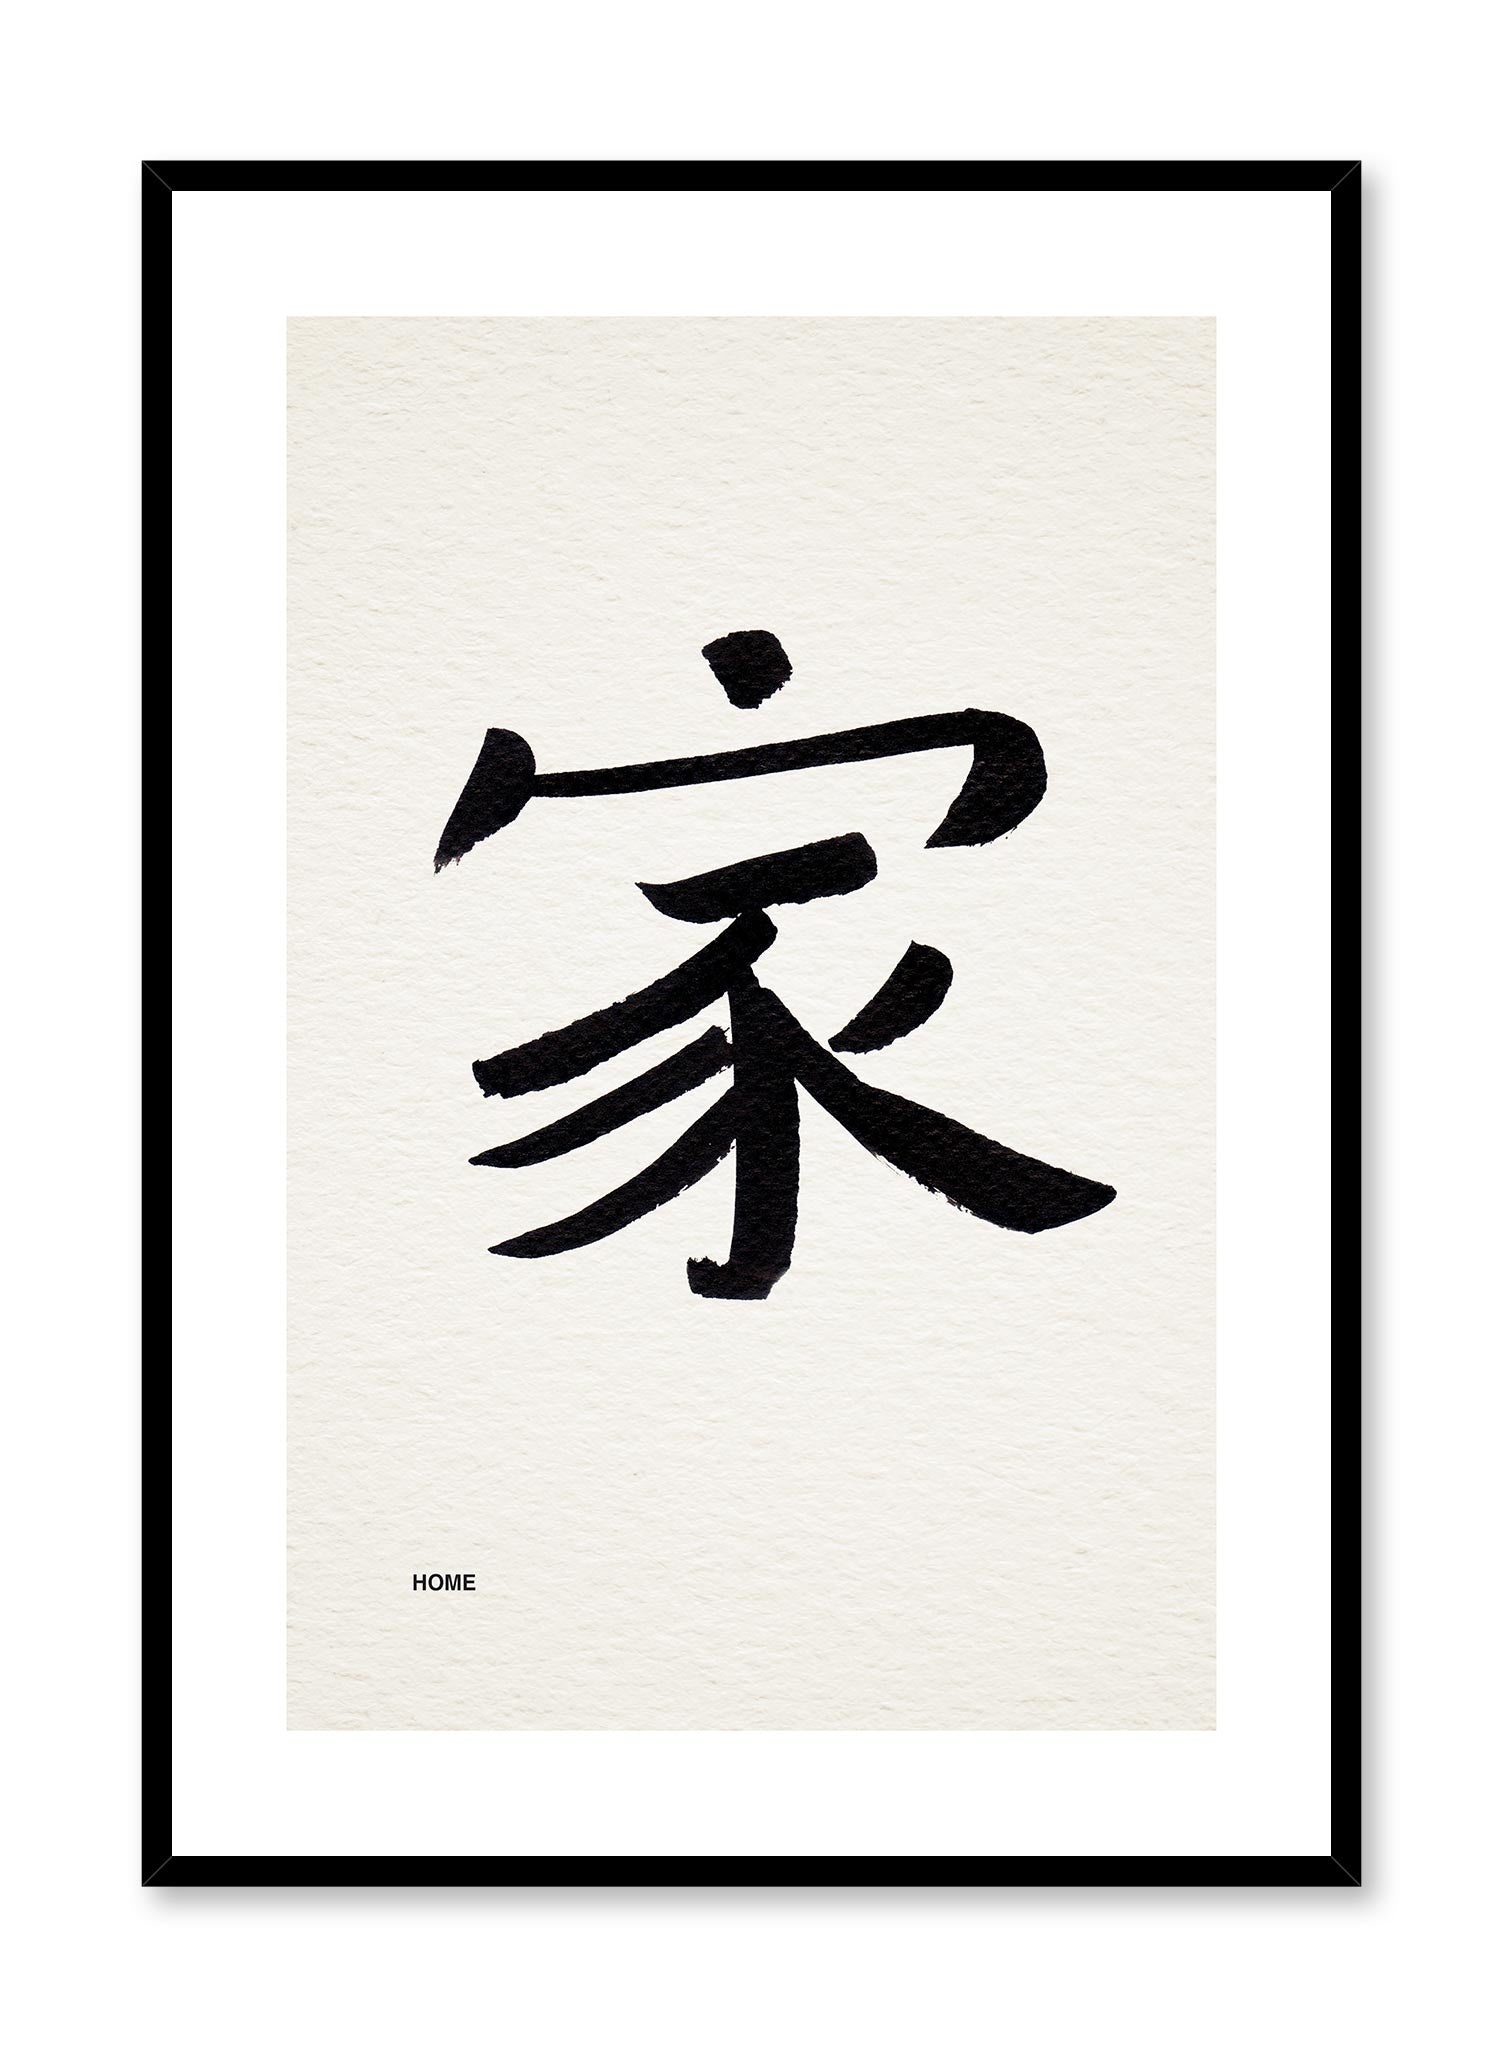 japanese typographic symbols